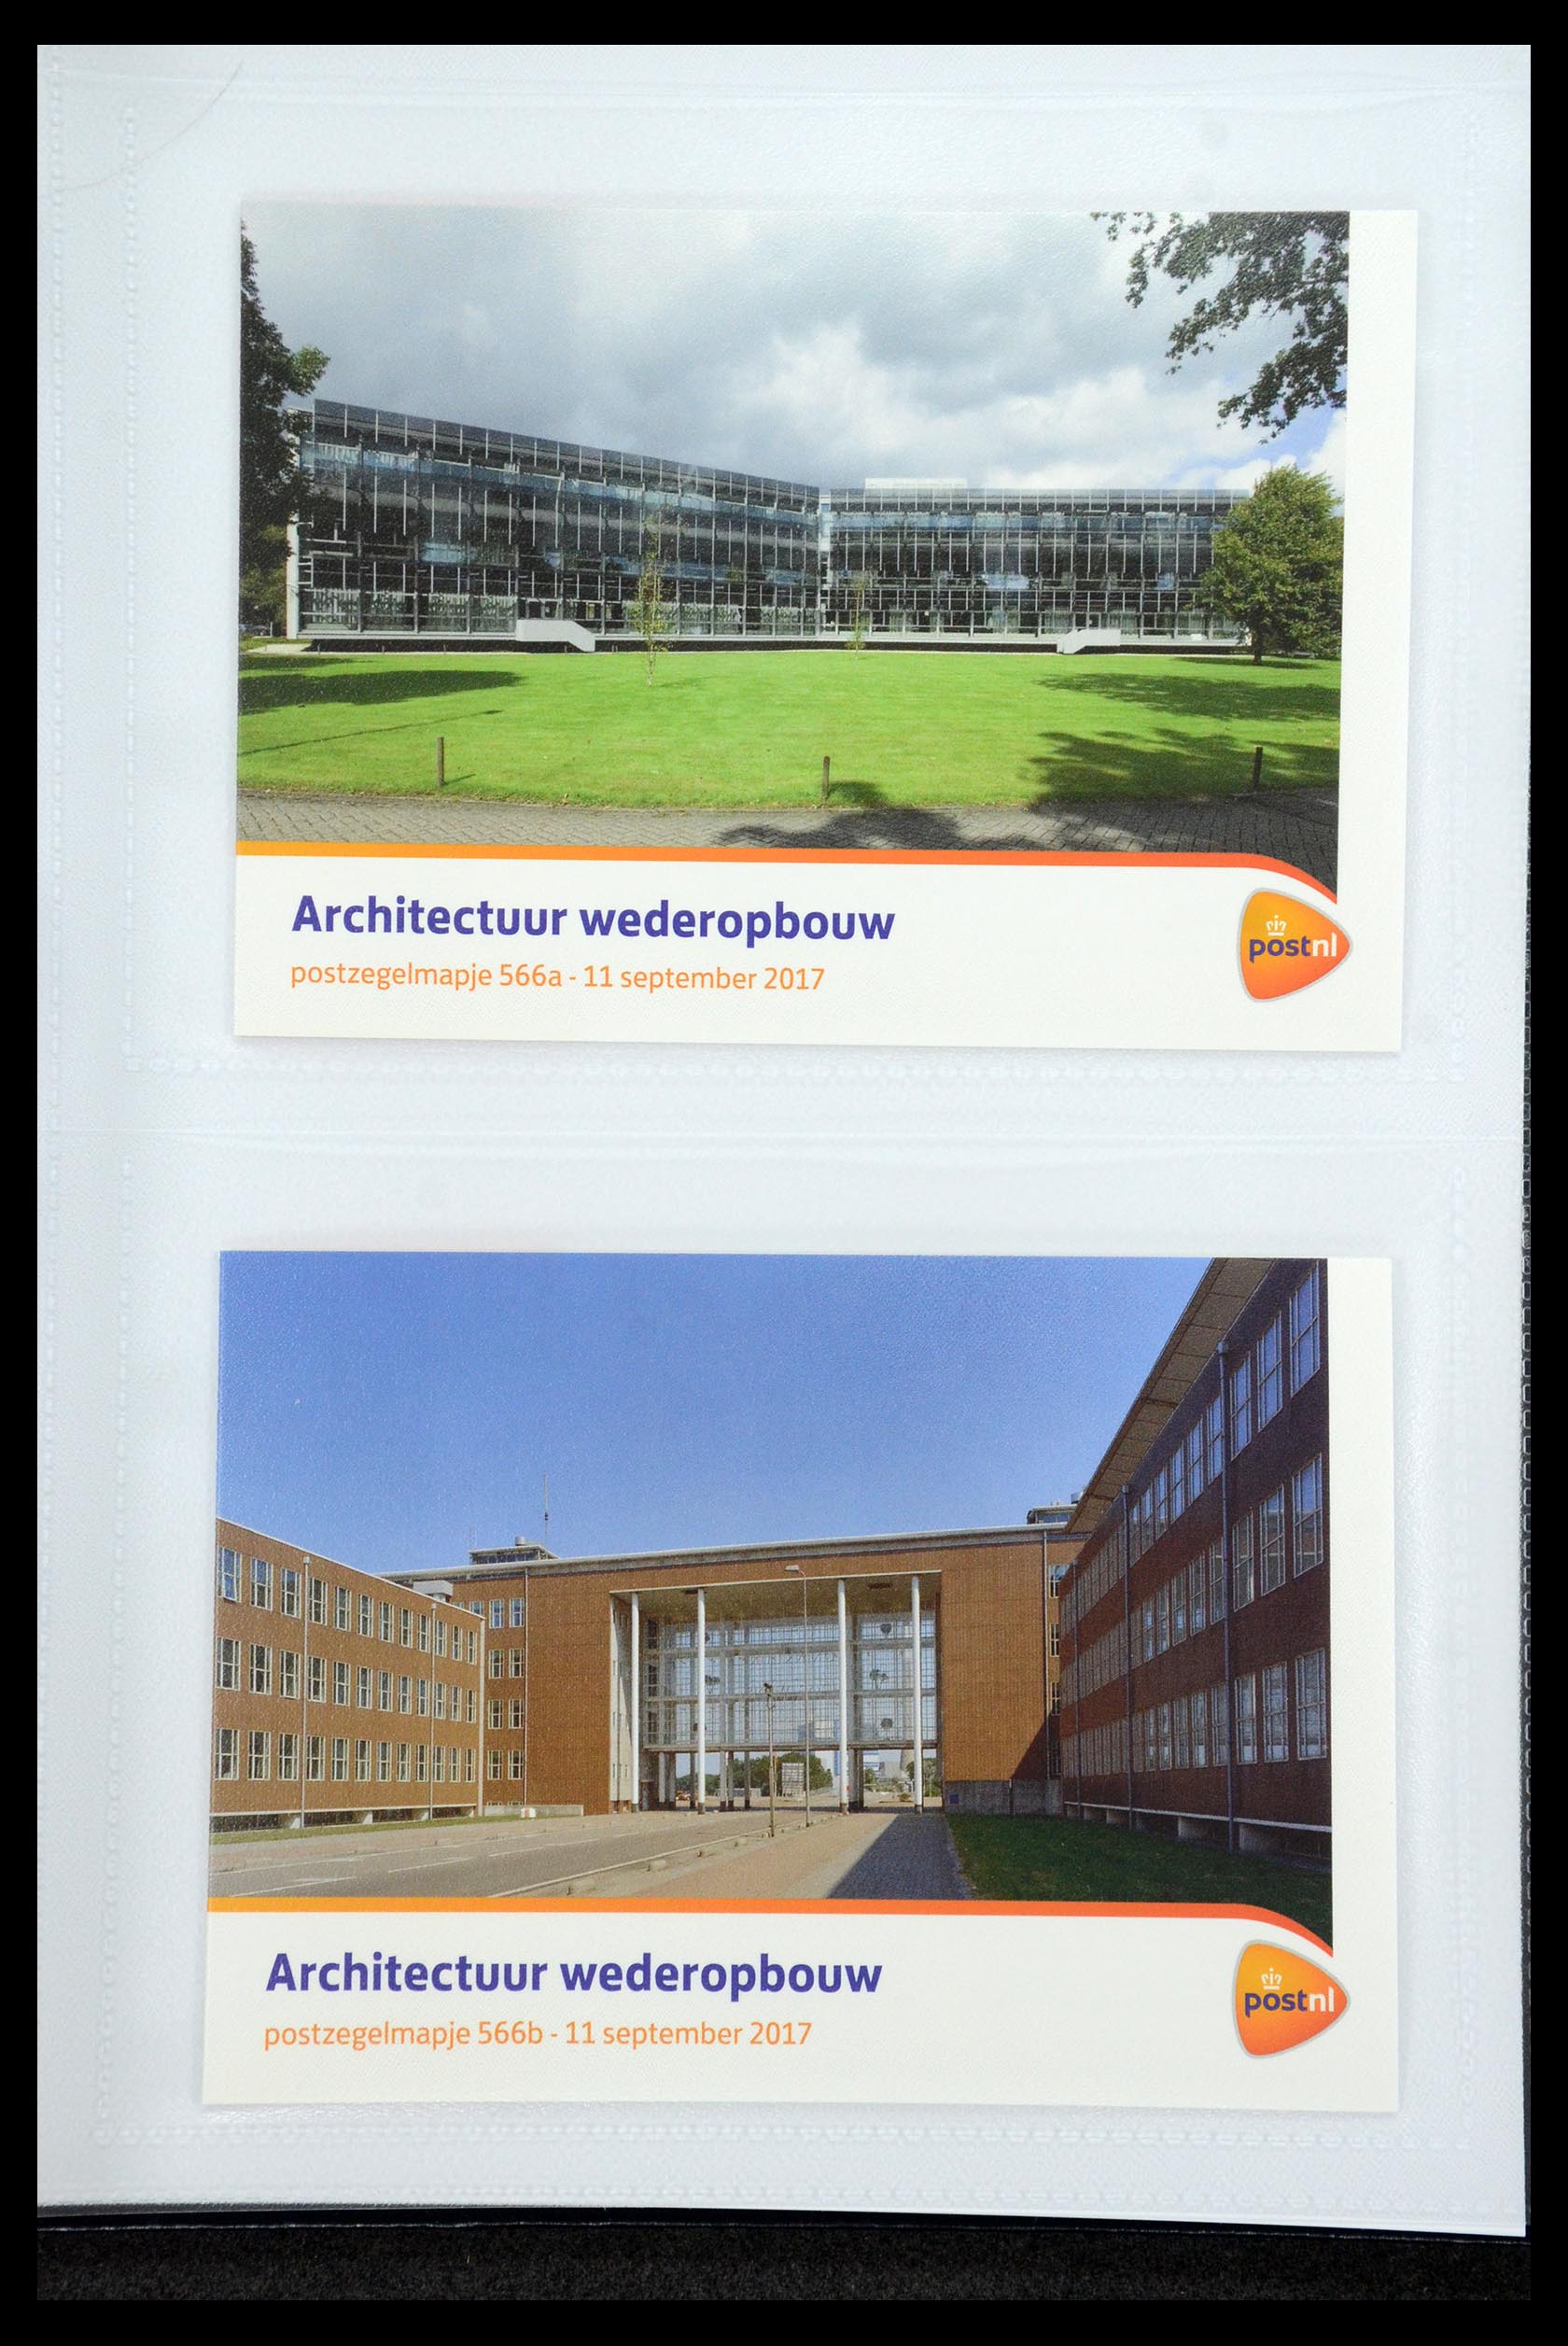 35947 340 - Stamp Collection 35947 Netherlands PTT presentation packs 1982-2019!